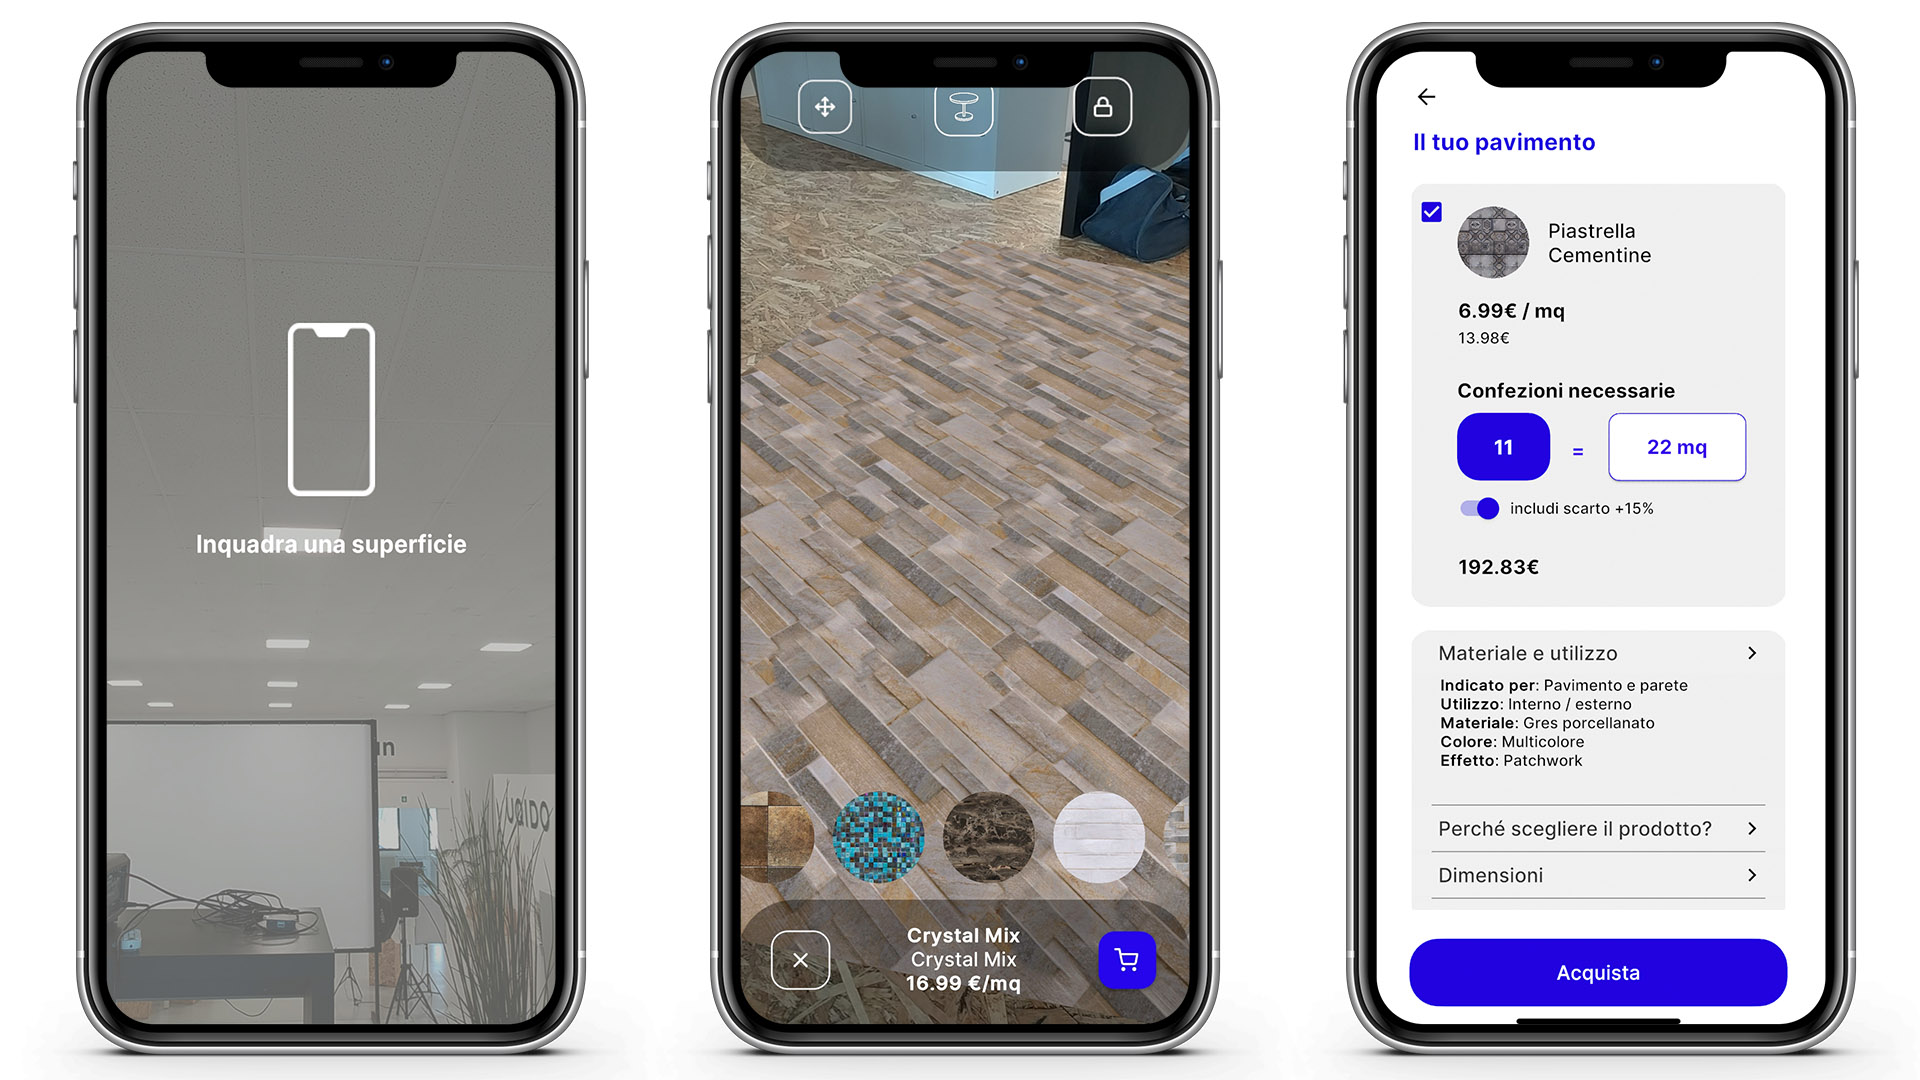 Schermate utilizzo dell'app per posizionare pavimenti